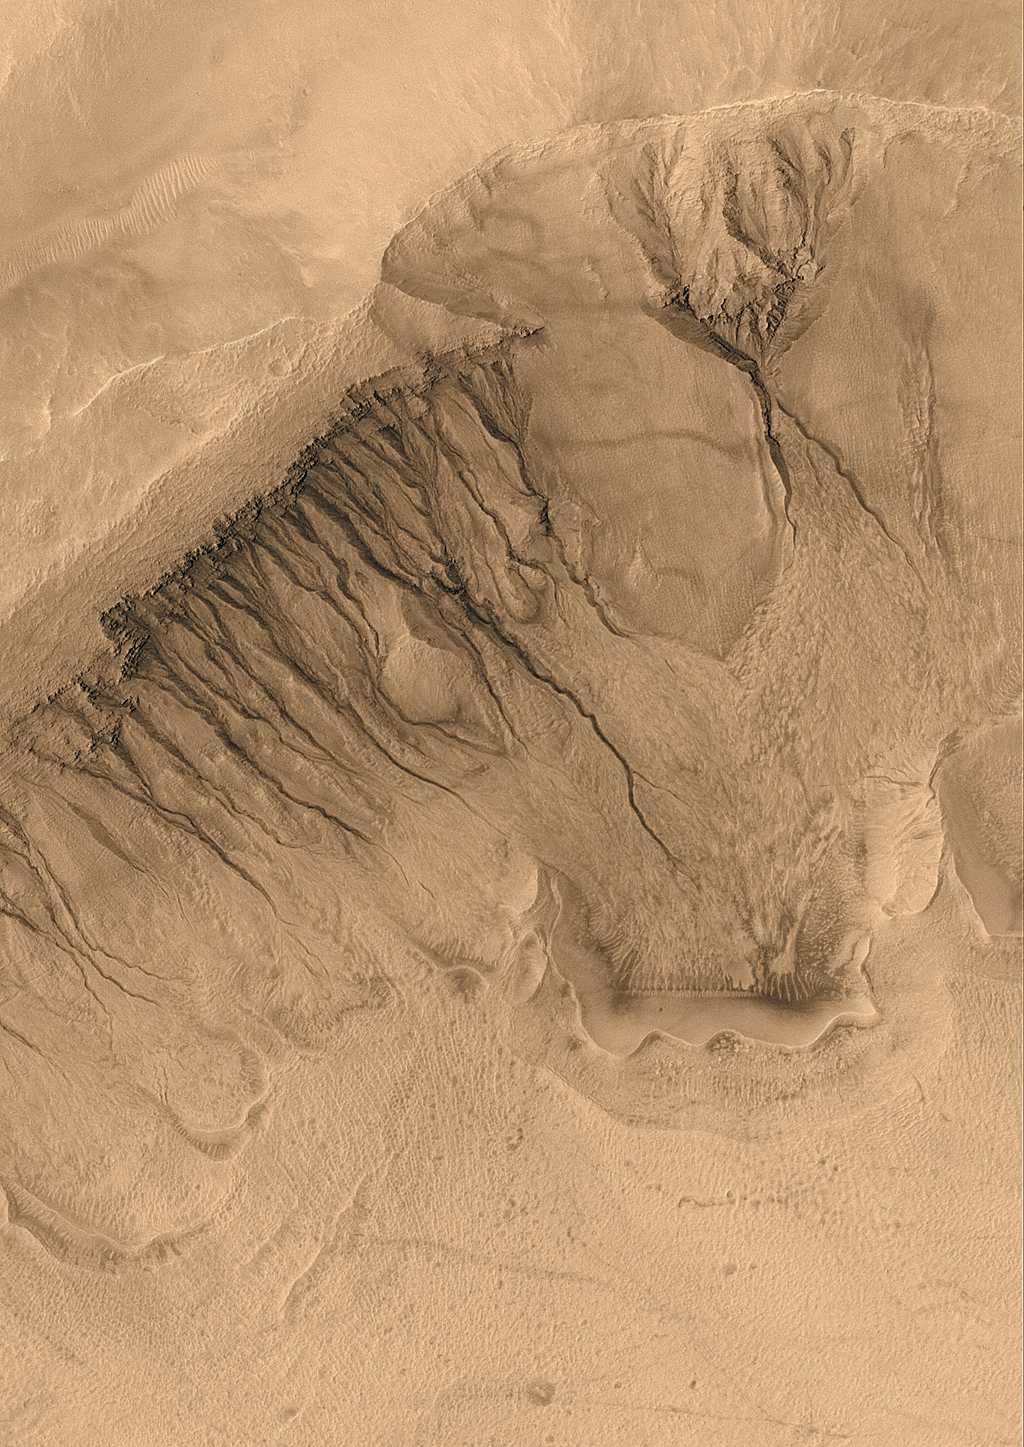 Les ravines du bassin Newton sur Mars en 2003. L'image montre une zone large de 1.500 mètres environ. Crédit : Malin Space Science Systems, MGS, JPL, Nasa